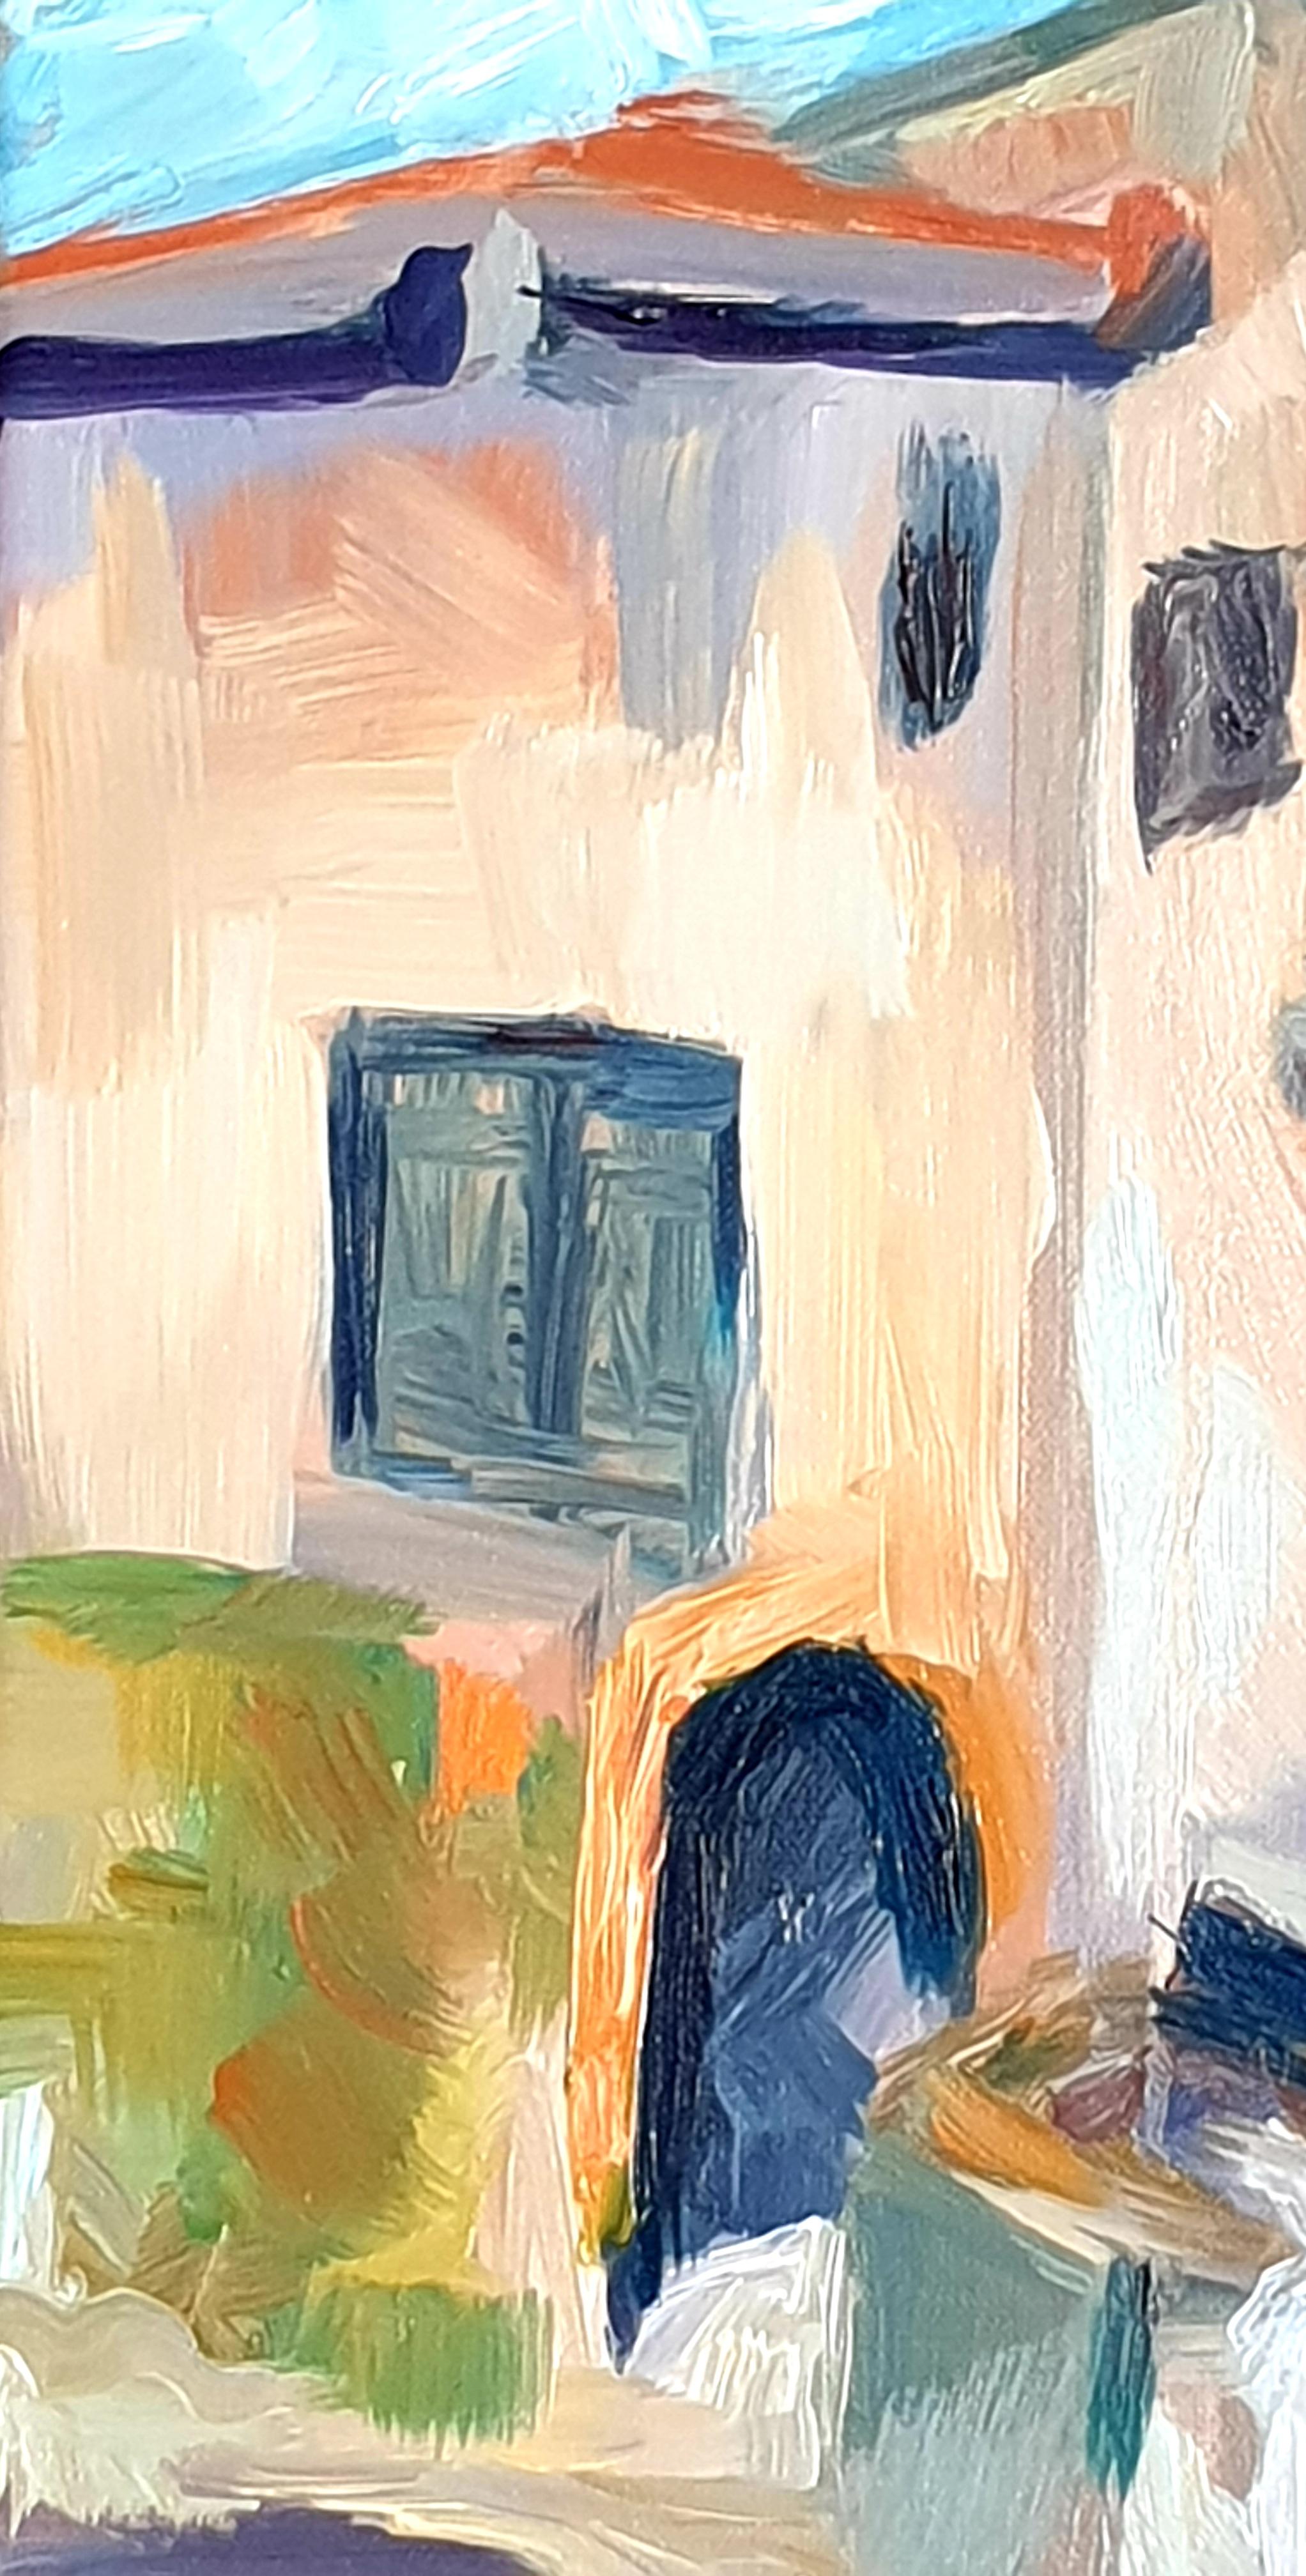 Huile impressionniste contemporaine sur toile d'une fontaine à Tourtour, en Provence, par l'artiste américaine Lisa de Wolff. Signé en bas à droite.

Une peinture à l'huile très colorée et énergique d'une fontaine dans le merveilleux village de